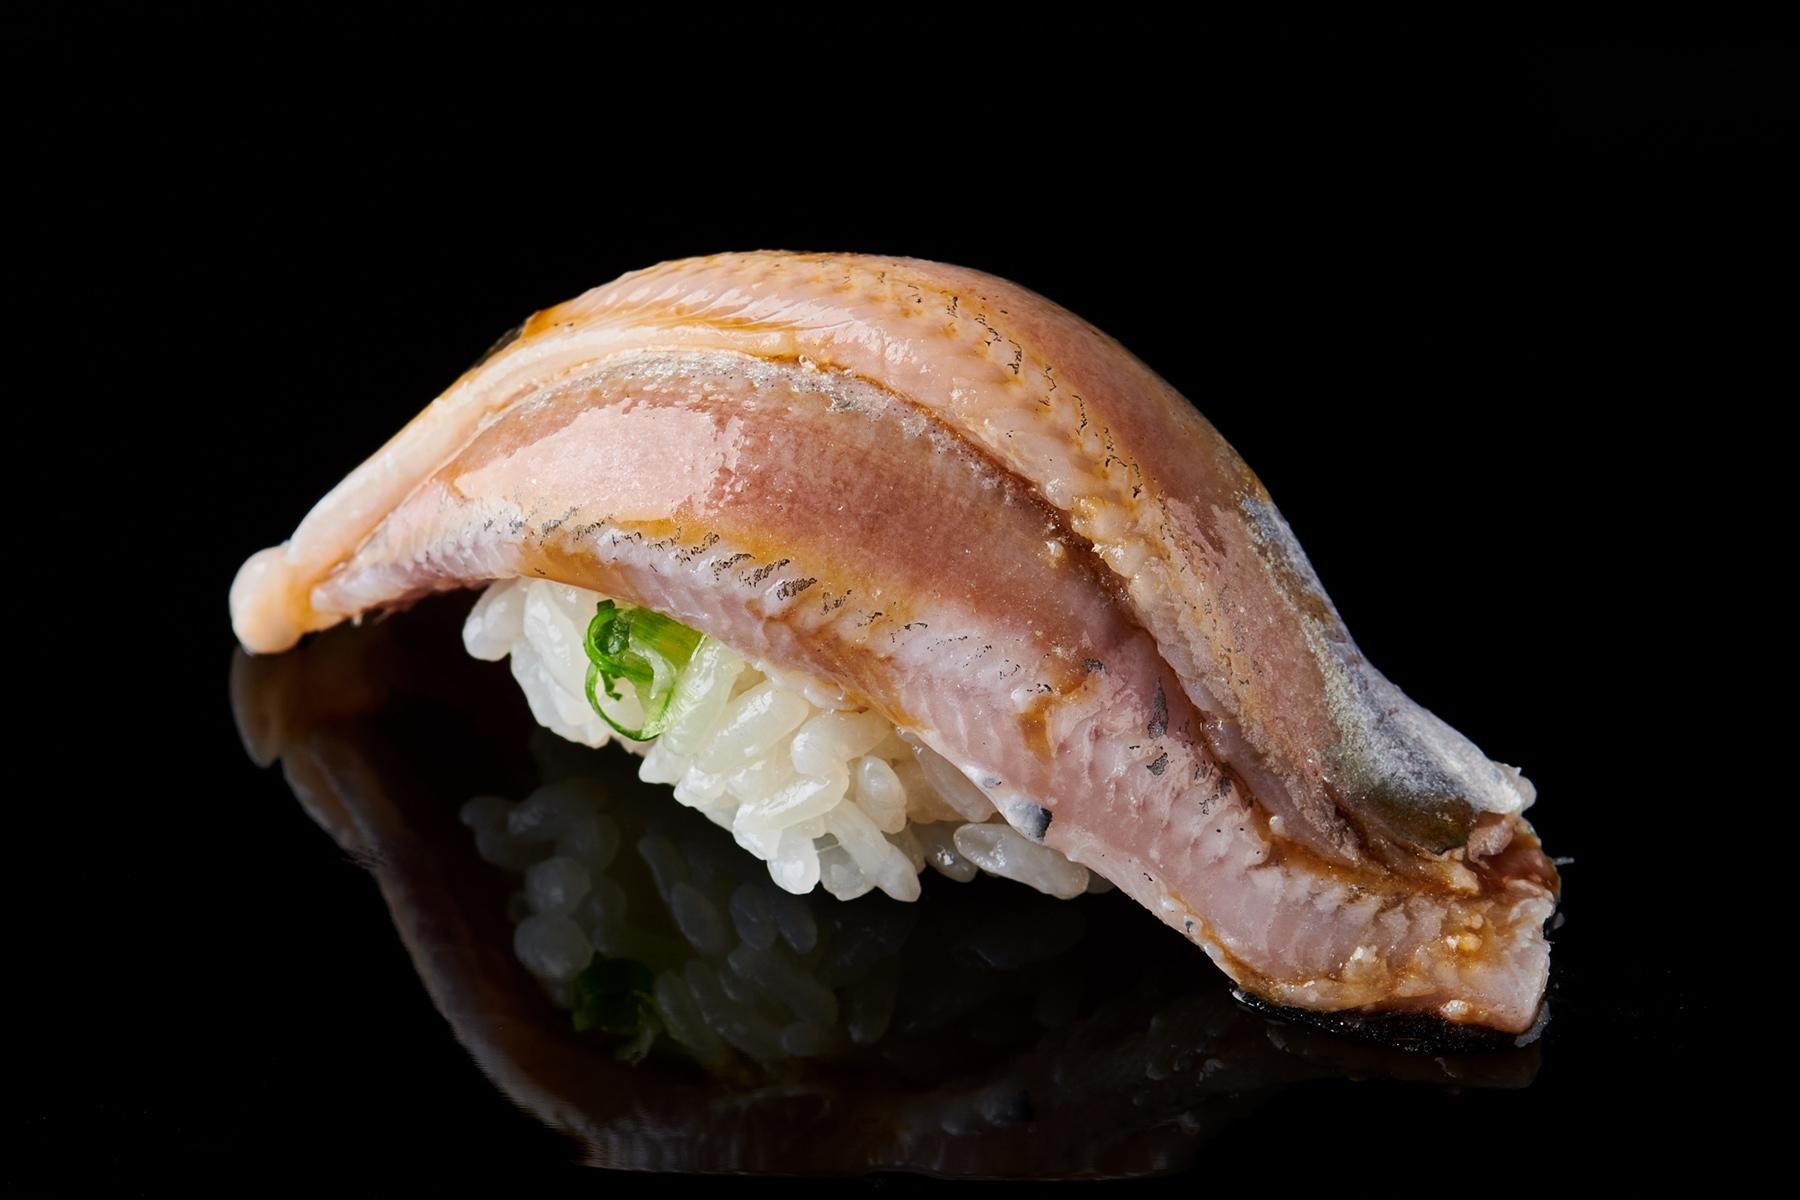 㐂寿司 の鰯は梅雨間の一瞬の光 㐂寿司 の365日 公式 Dancyu ダンチュウ